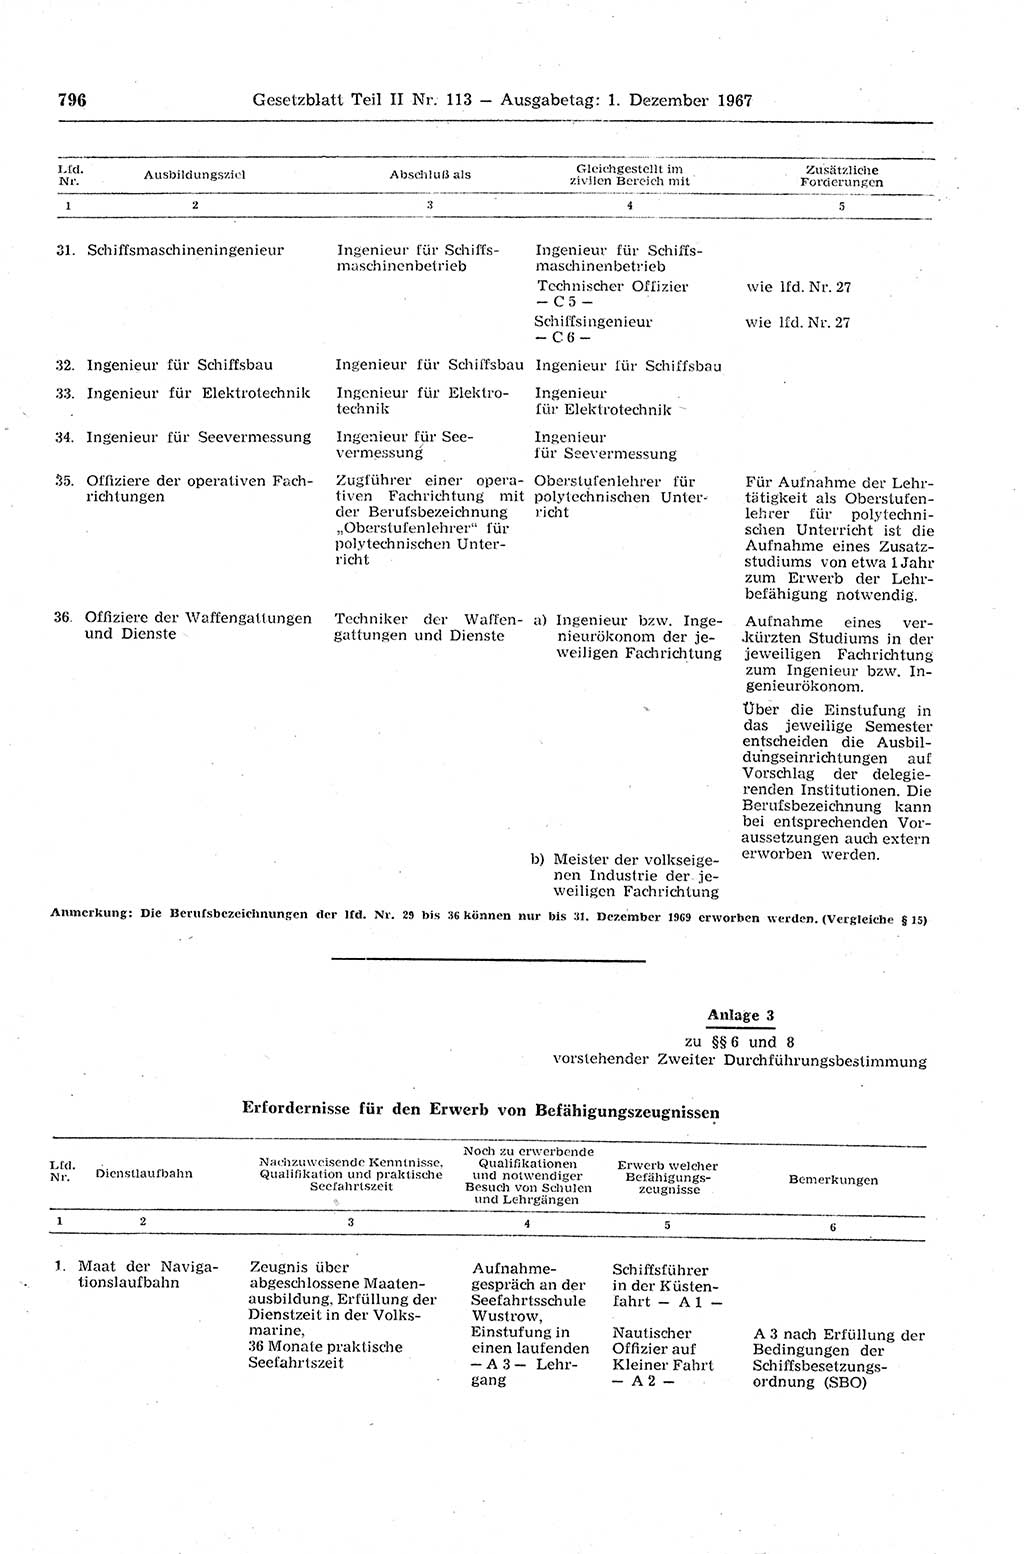 Gesetzblatt (GBl.) der Deutschen Demokratischen Republik (DDR) Teil ⅠⅠ 1967, Seite 796 (GBl. DDR ⅠⅠ 1967, S. 796)